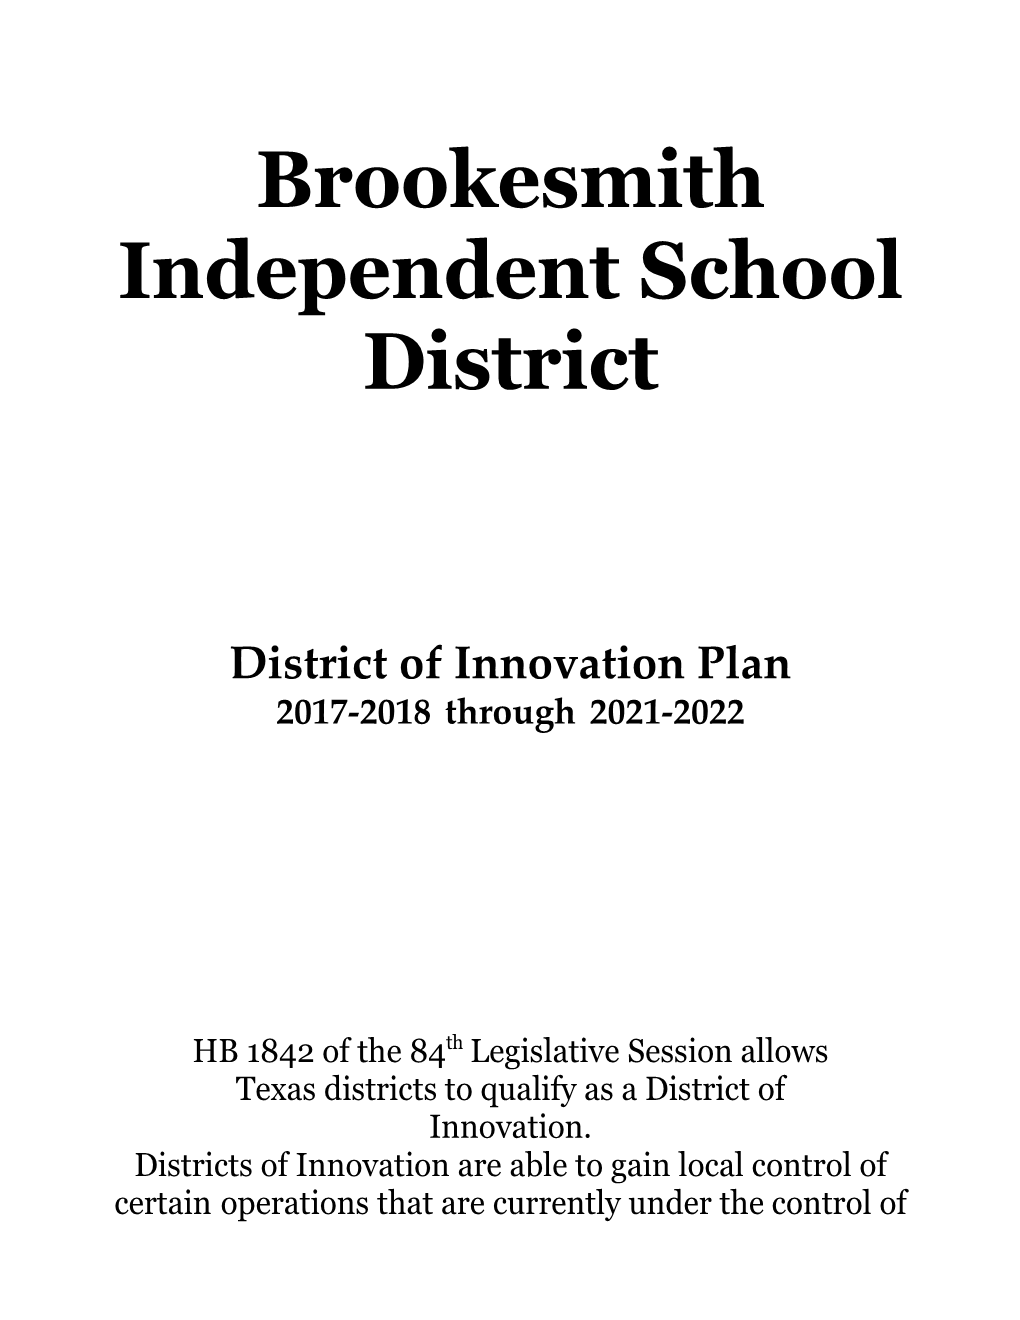 Brookesmith Independent School District